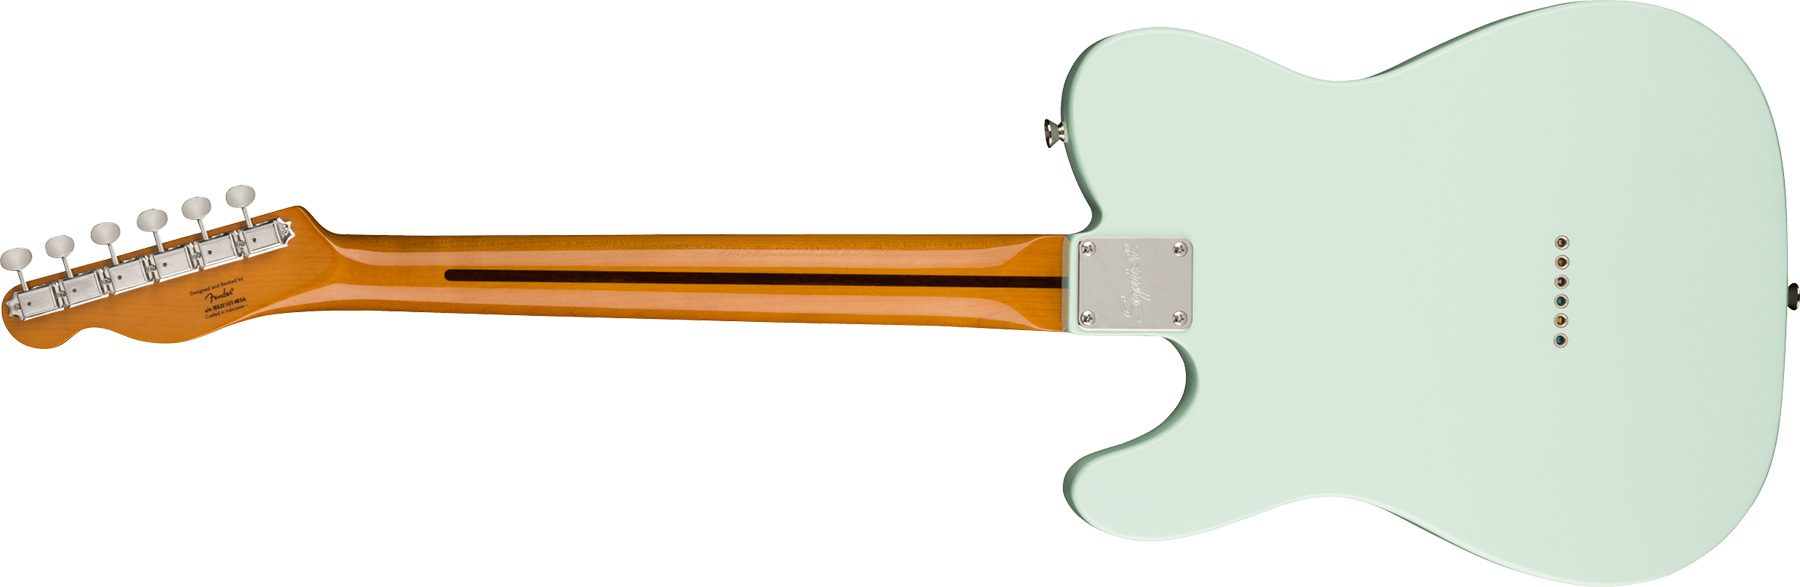 Squier Tele '50s Parchment Pickguard Classic Vibe Fsr 2s Ht Mn - Sonic Blue - Guitarra eléctrica con forma de tel - Variation 1